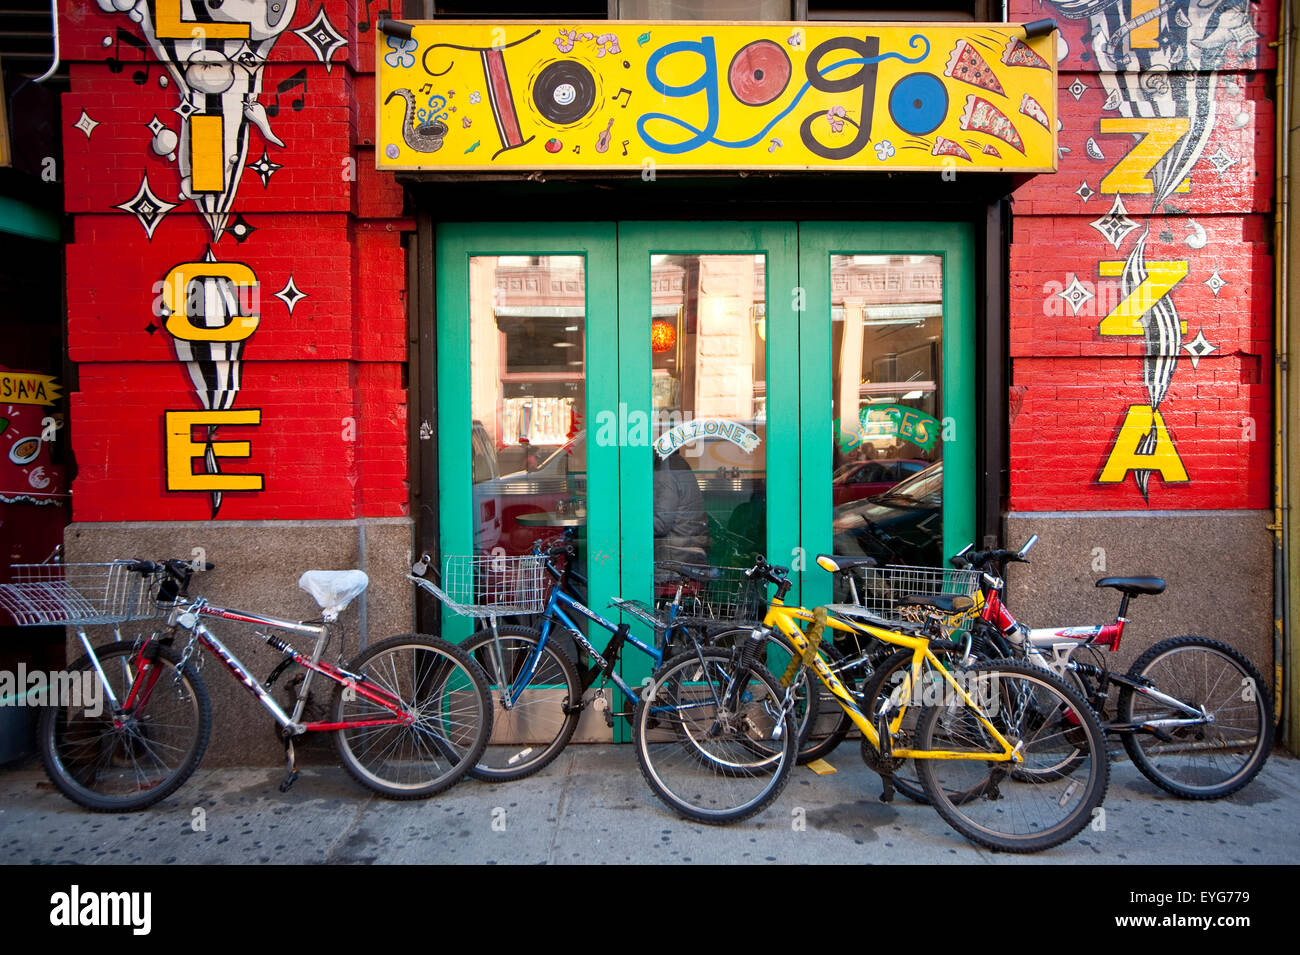 Fahrräder außerhalb einer Pizzeria In West Village, Manhattan, New York, Usa Stockfoto